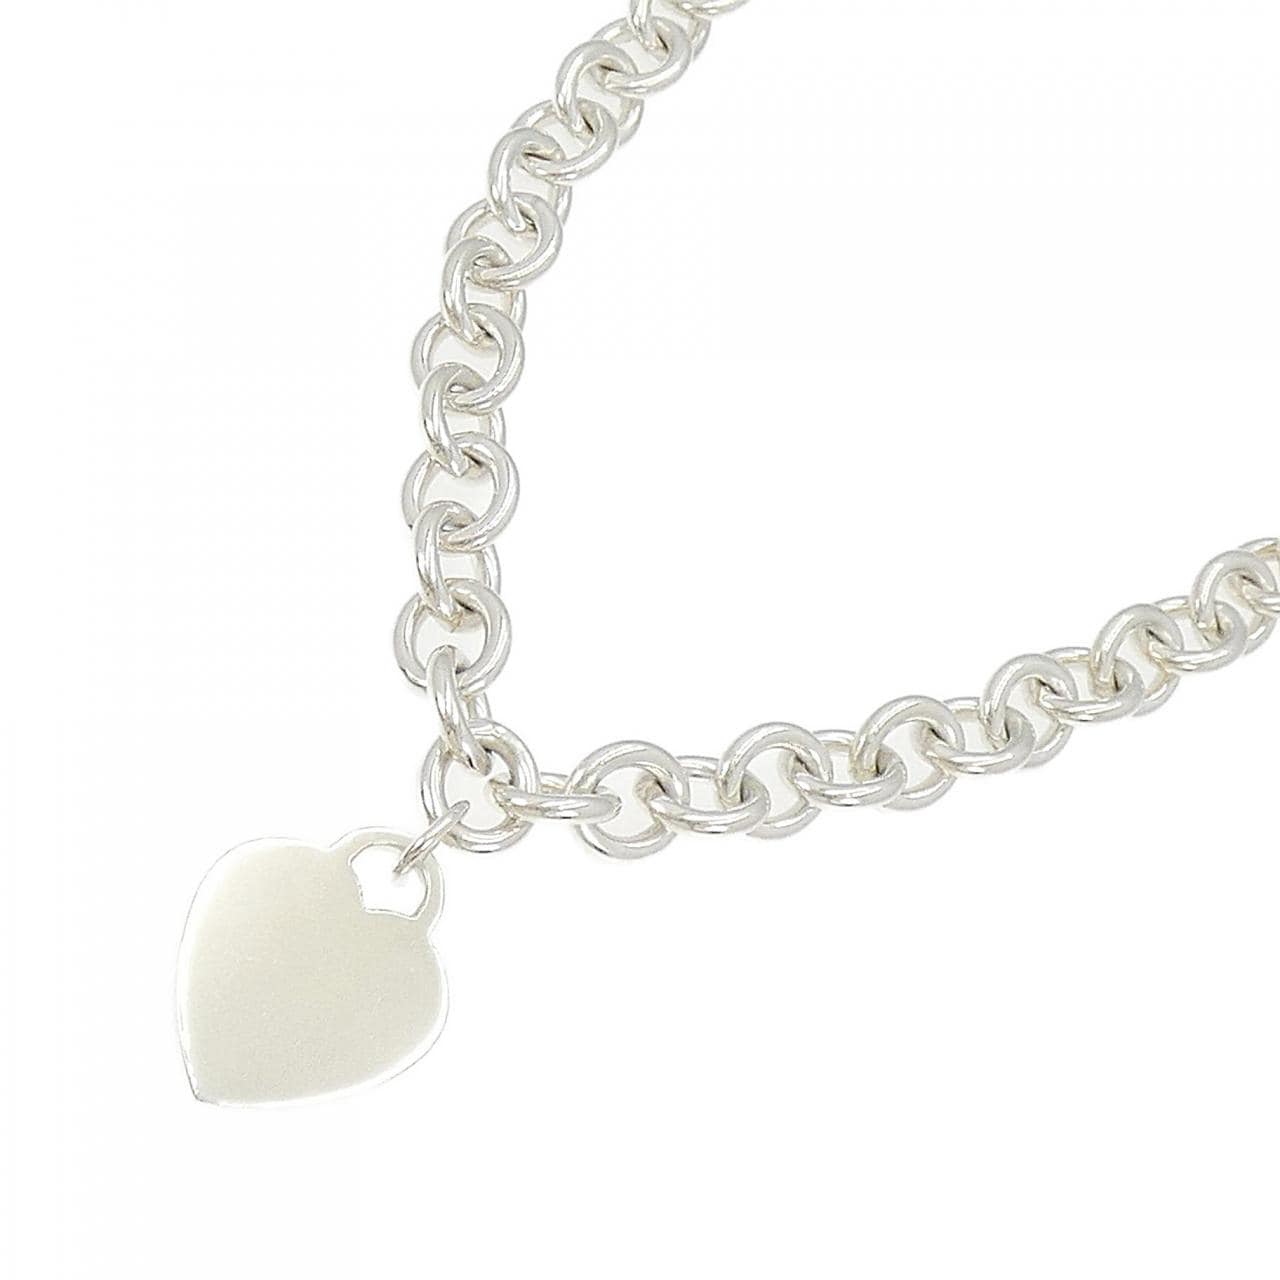 TIFFANY heart tag necklace